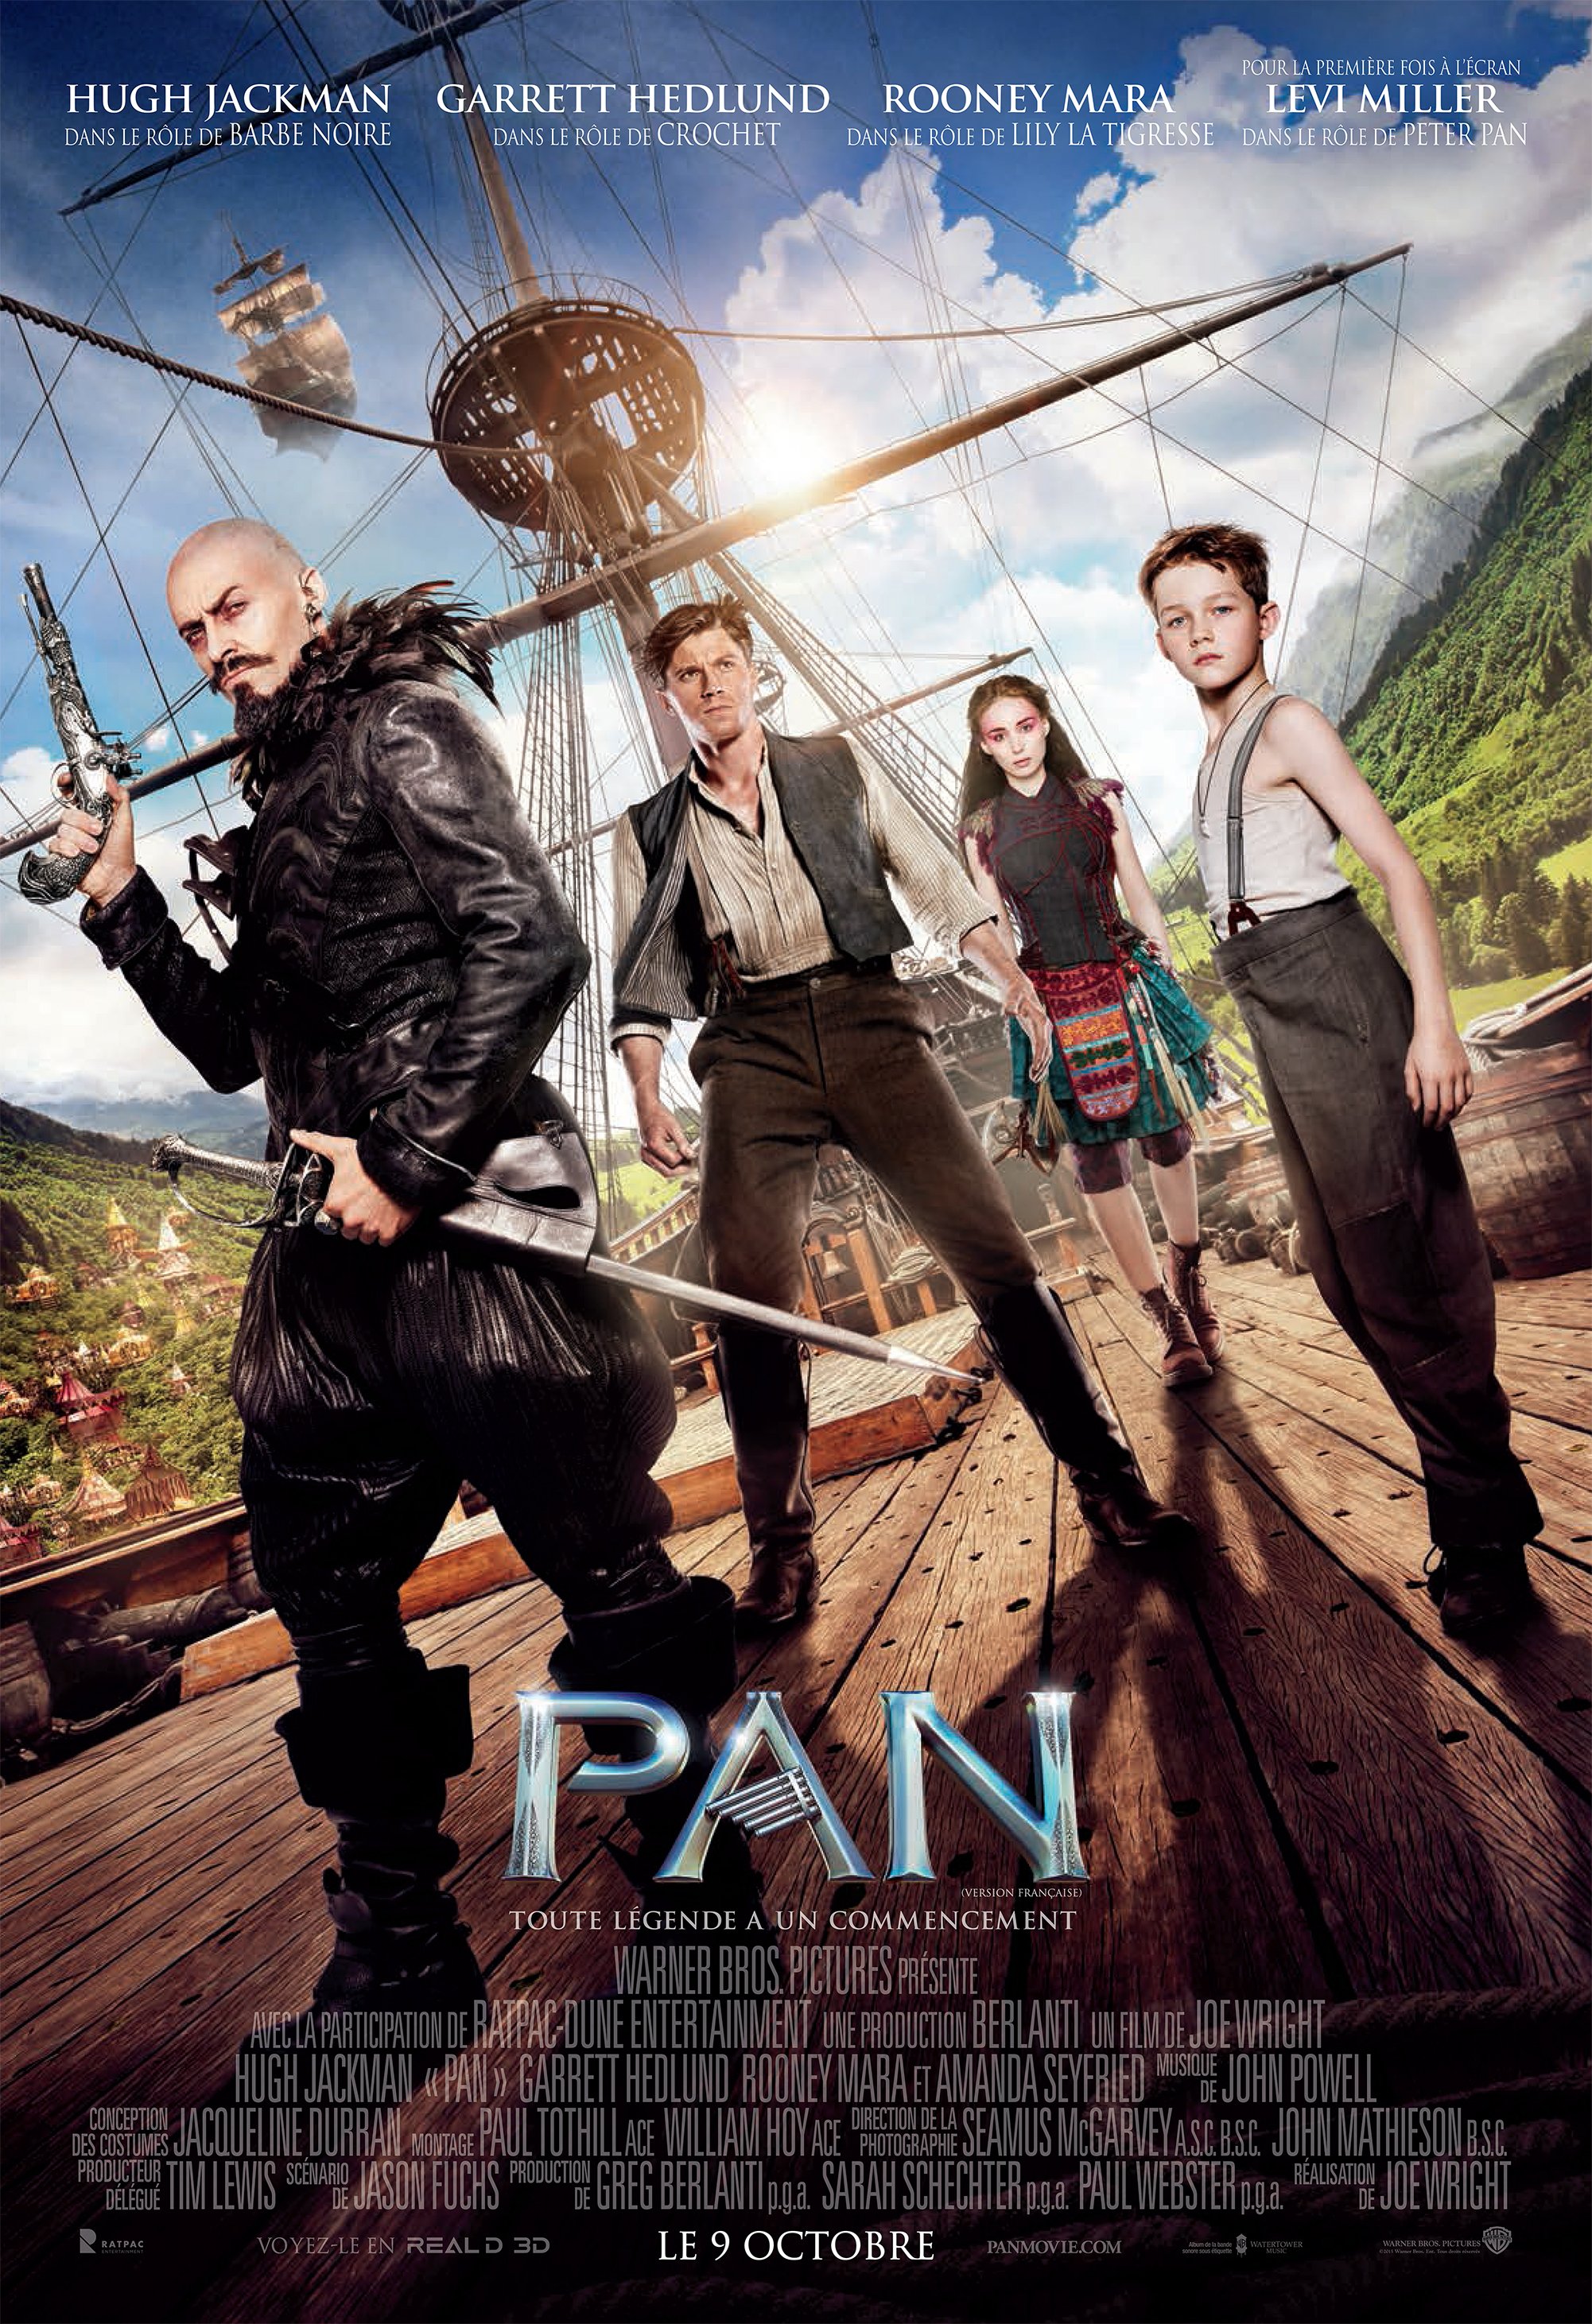 L'affiche du film Pan v.f.